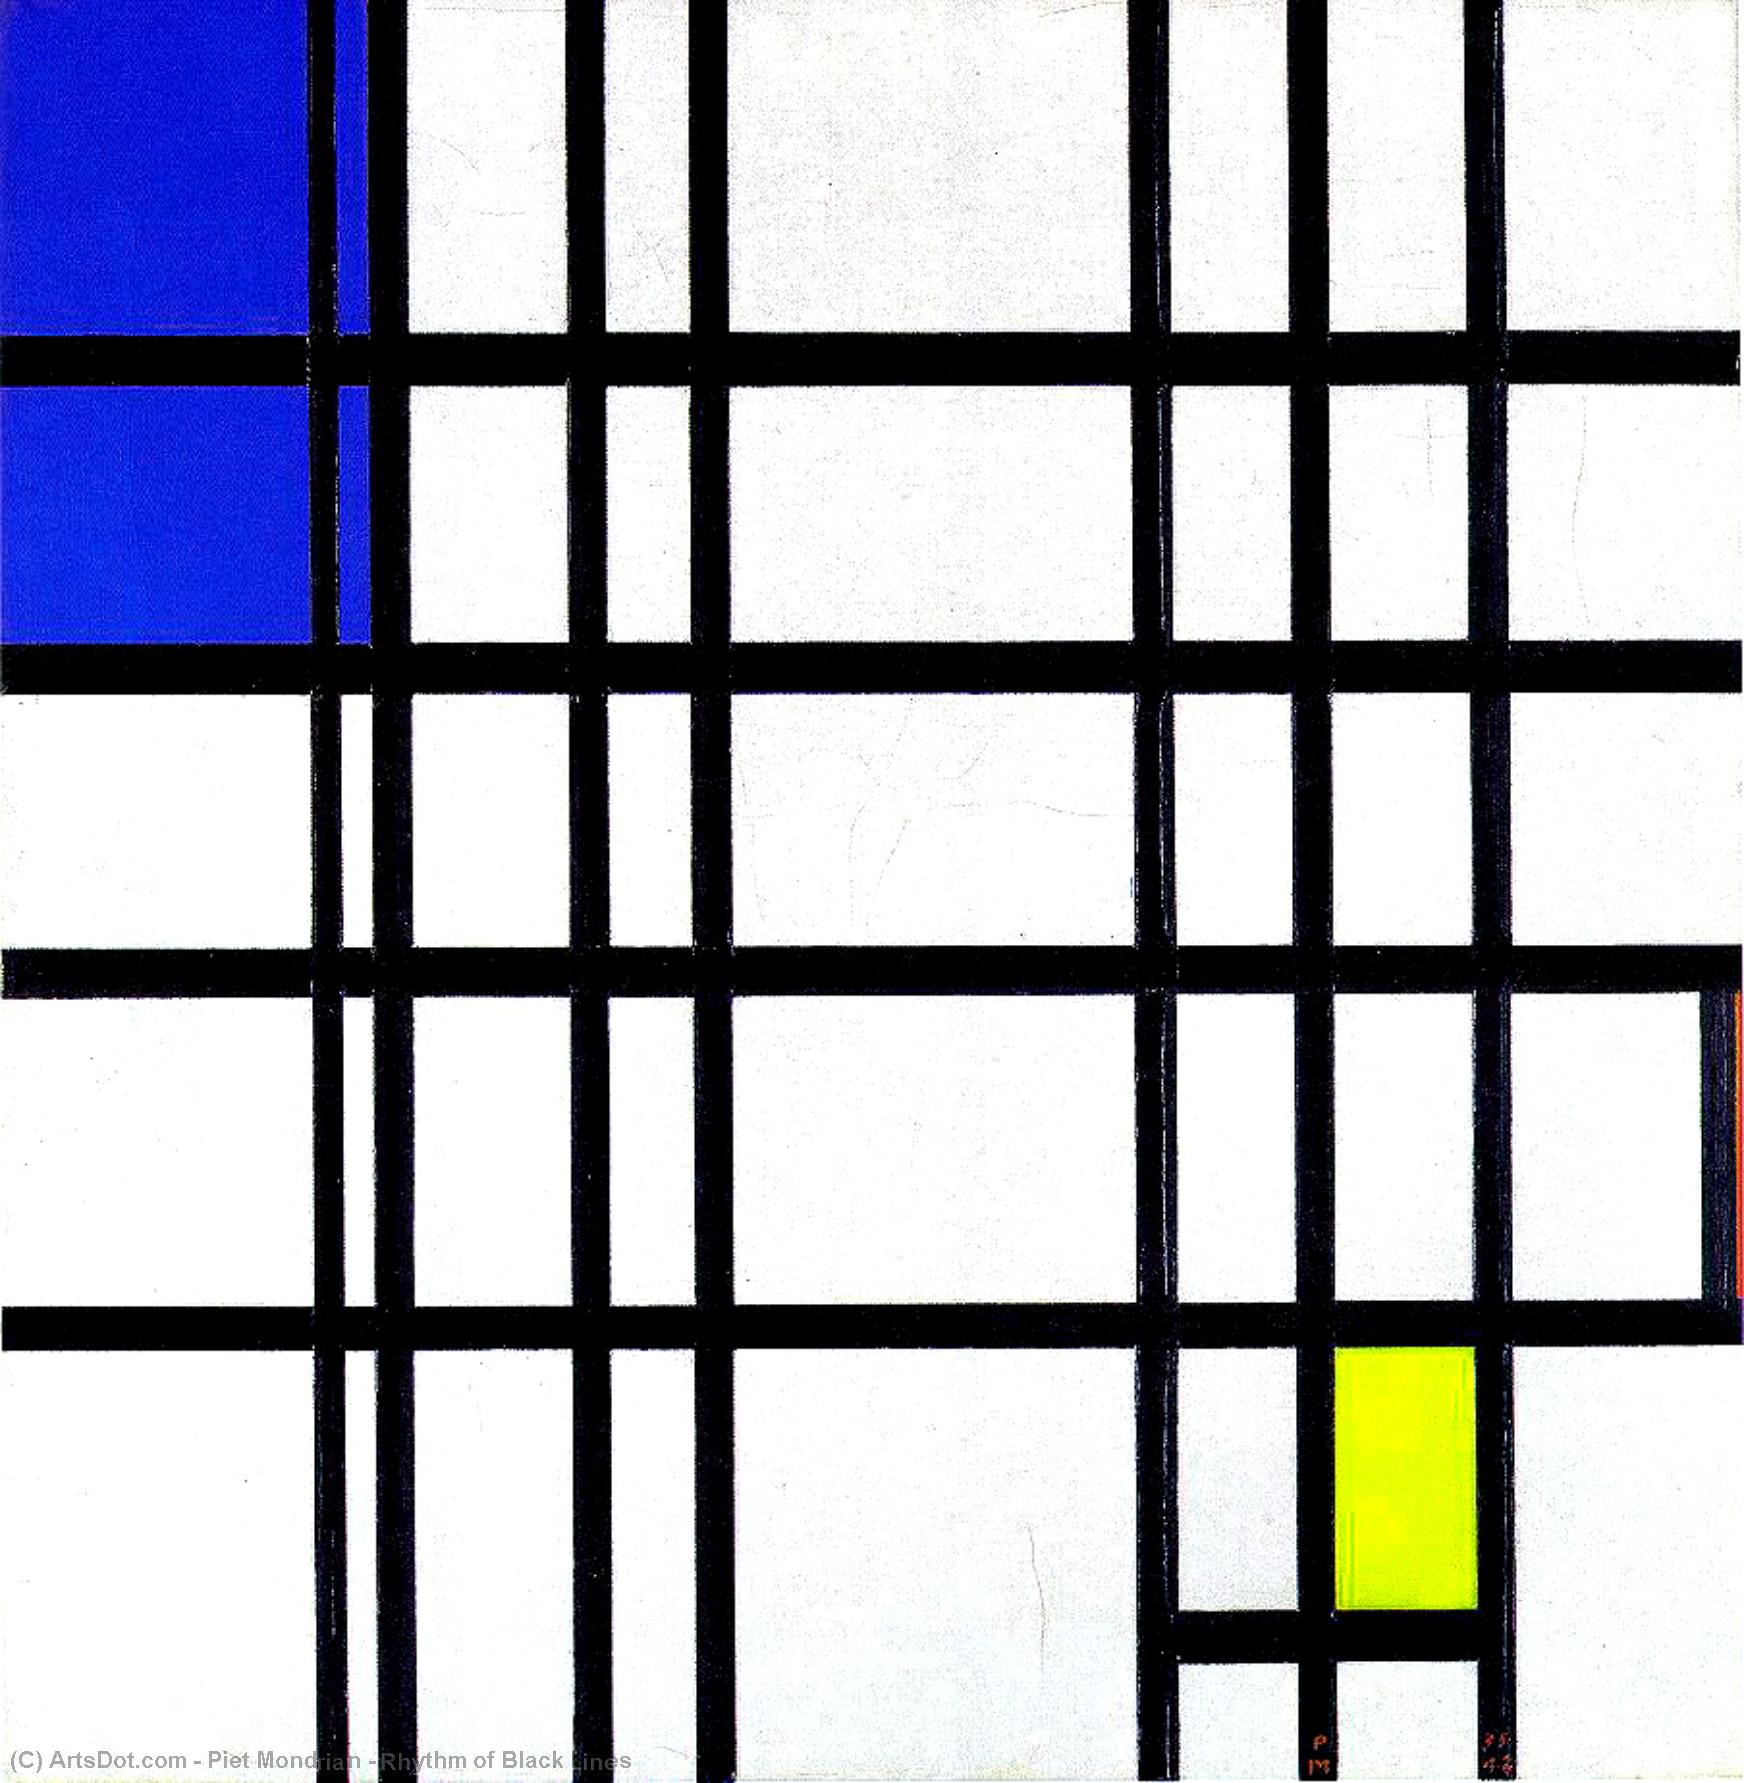 WikiOO.org - Encyclopedia of Fine Arts - Målning, konstverk Piet Mondrian - Rhythm of Black Lines